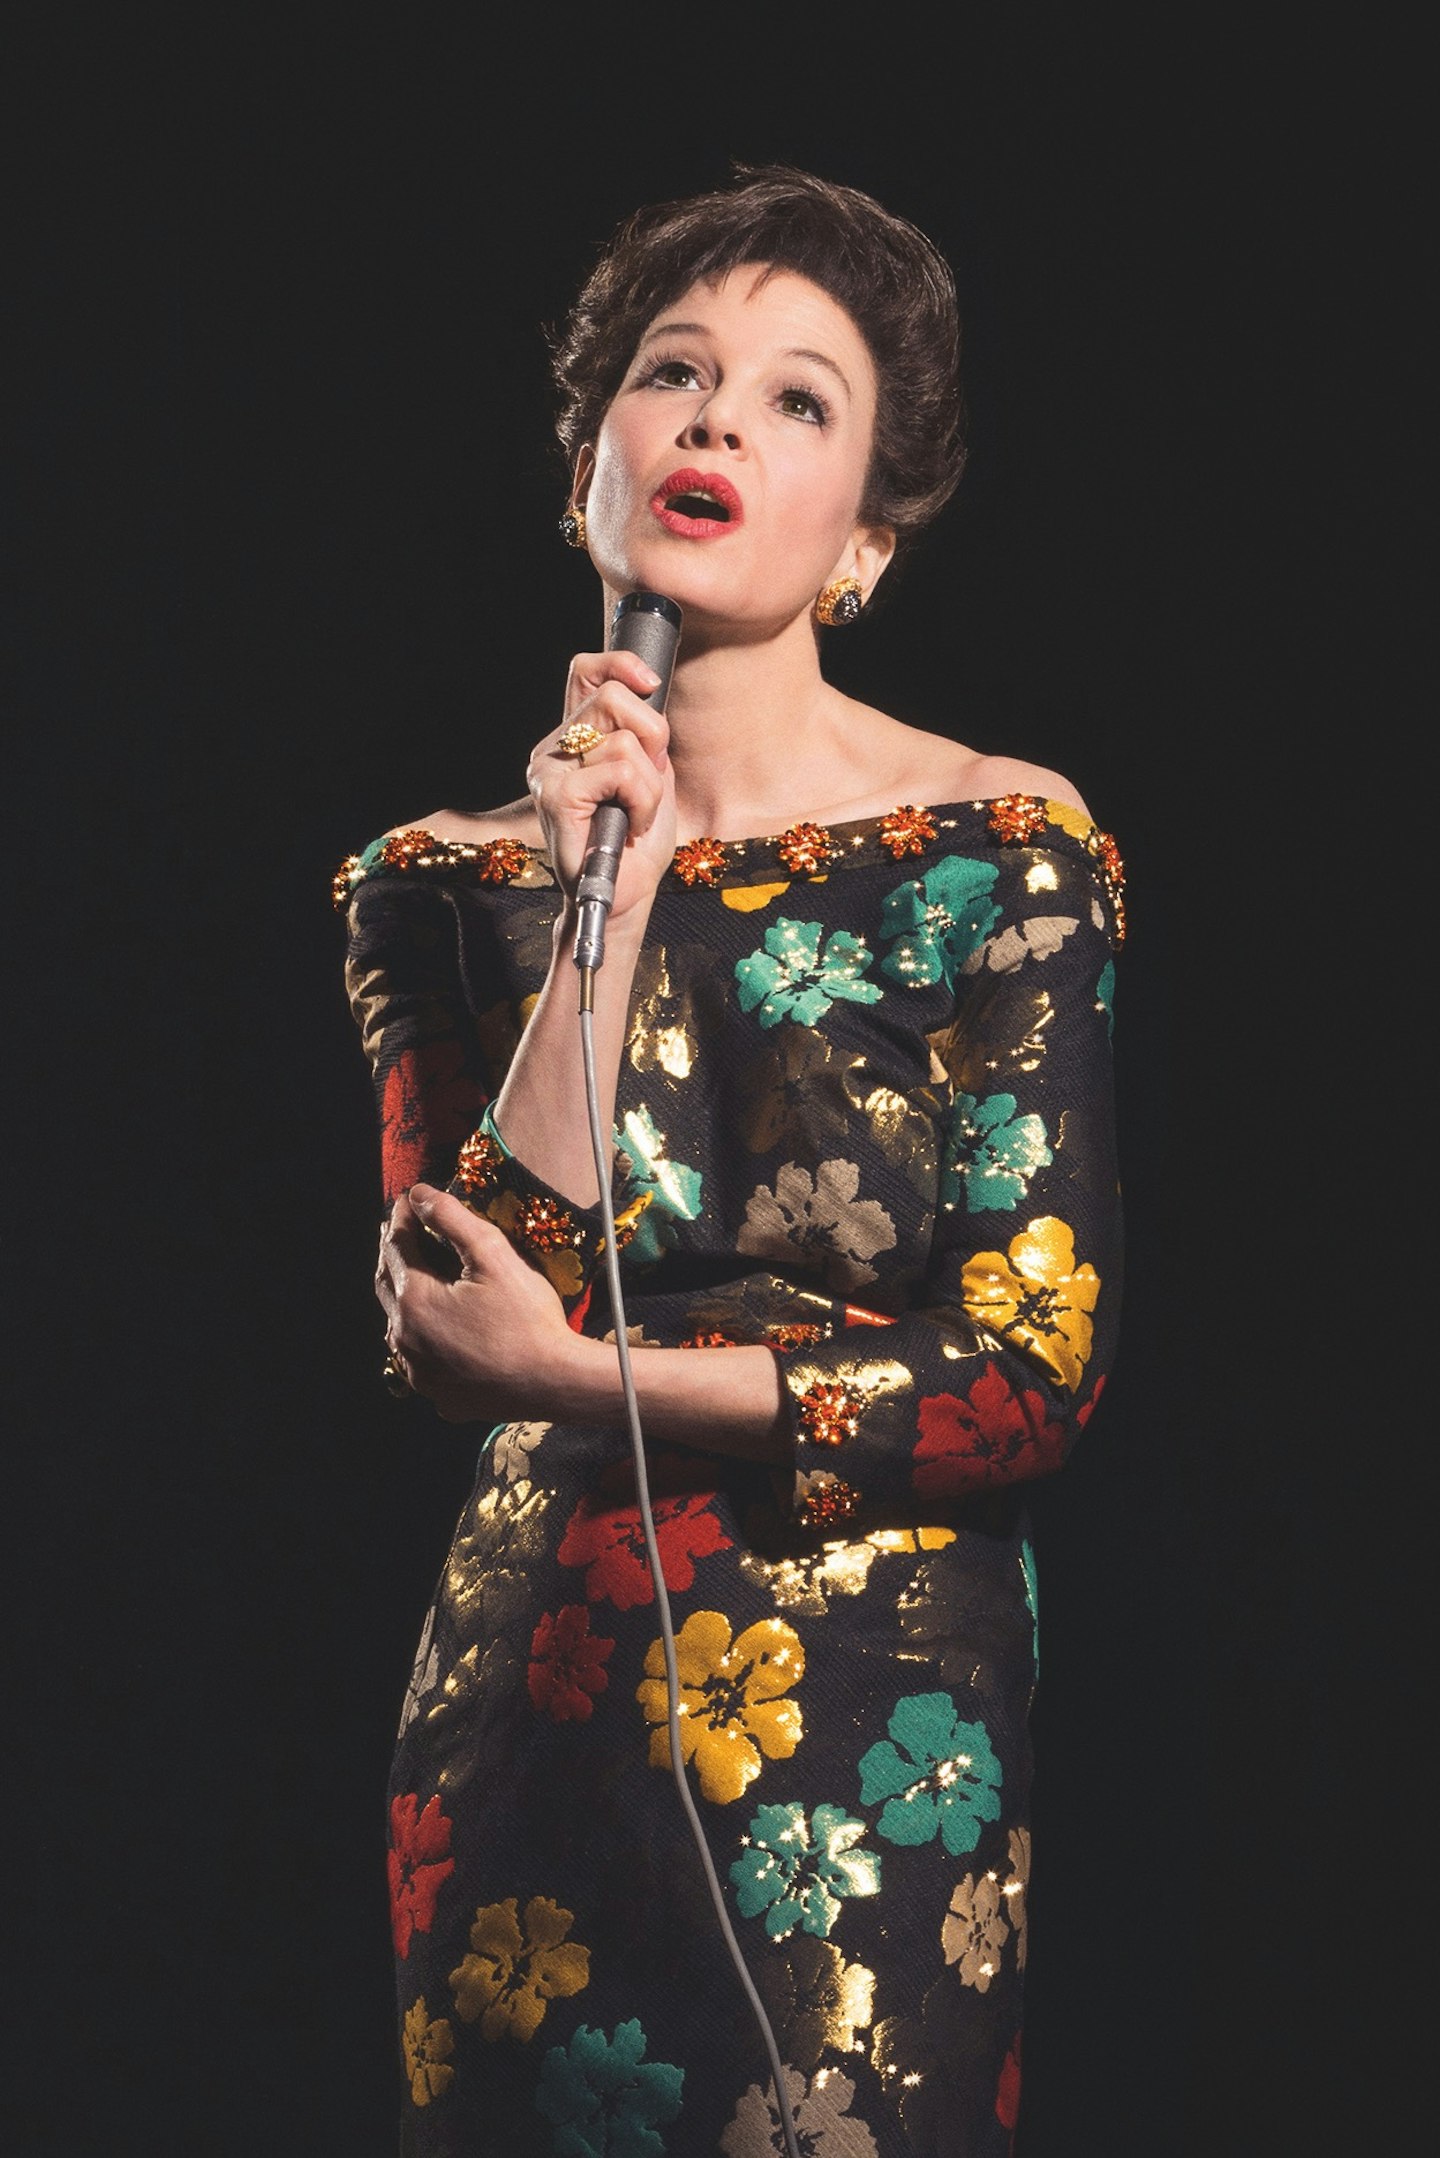 Rene Zellweger as Judy Garland in Judy